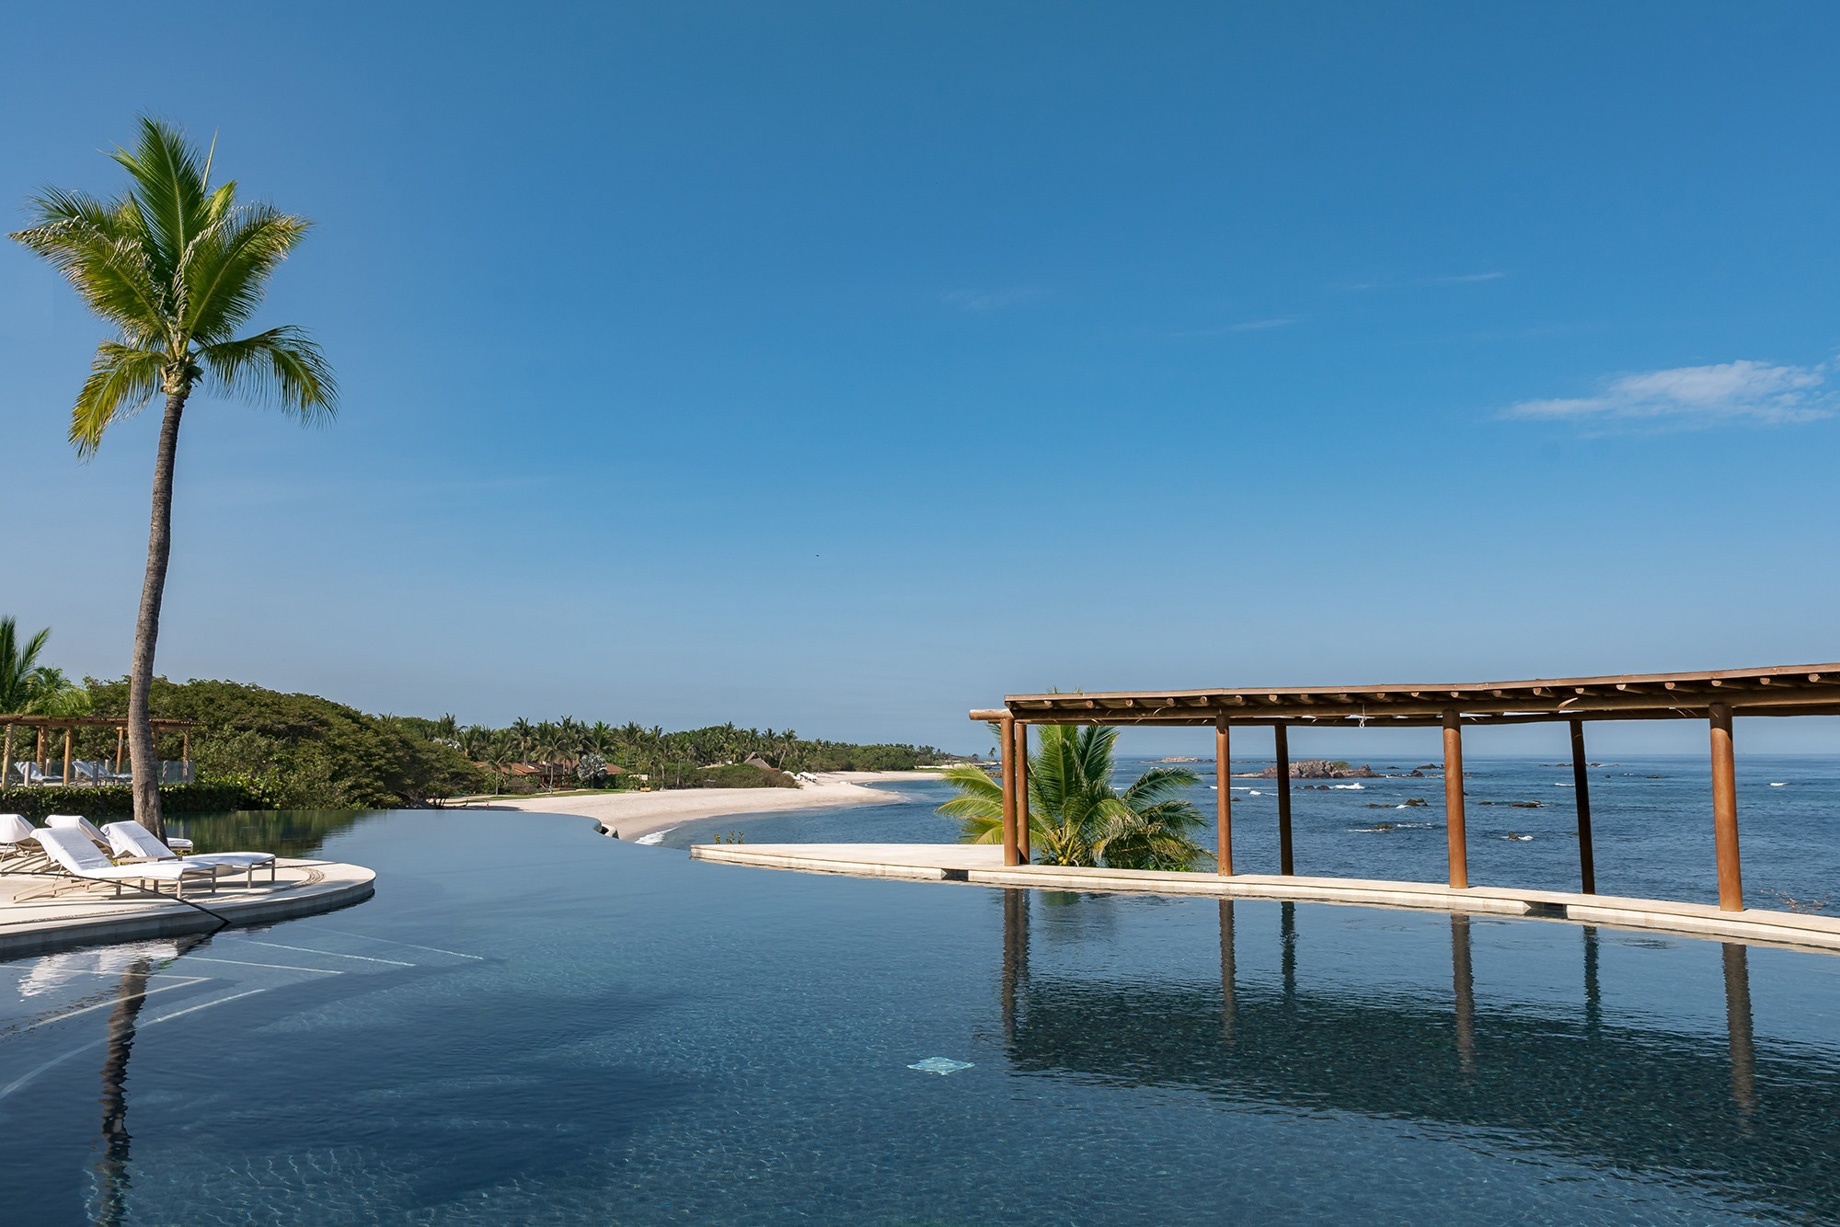 Four Seasons Resort Punta Mita – Nayarit, Mexico – Resort Pool View